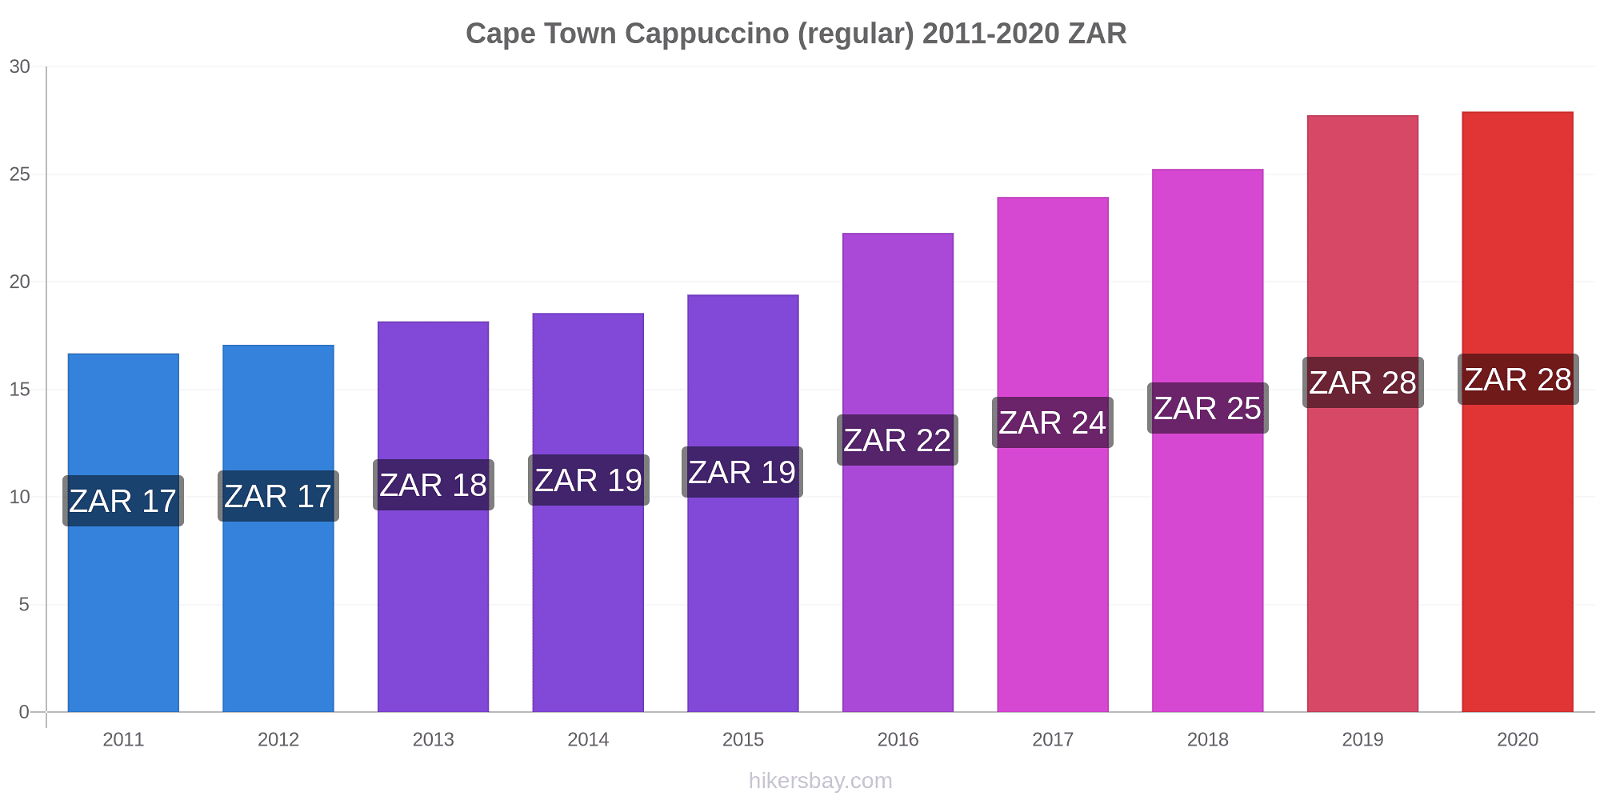 Cape Town price changes Cappuccino (regular) hikersbay.com